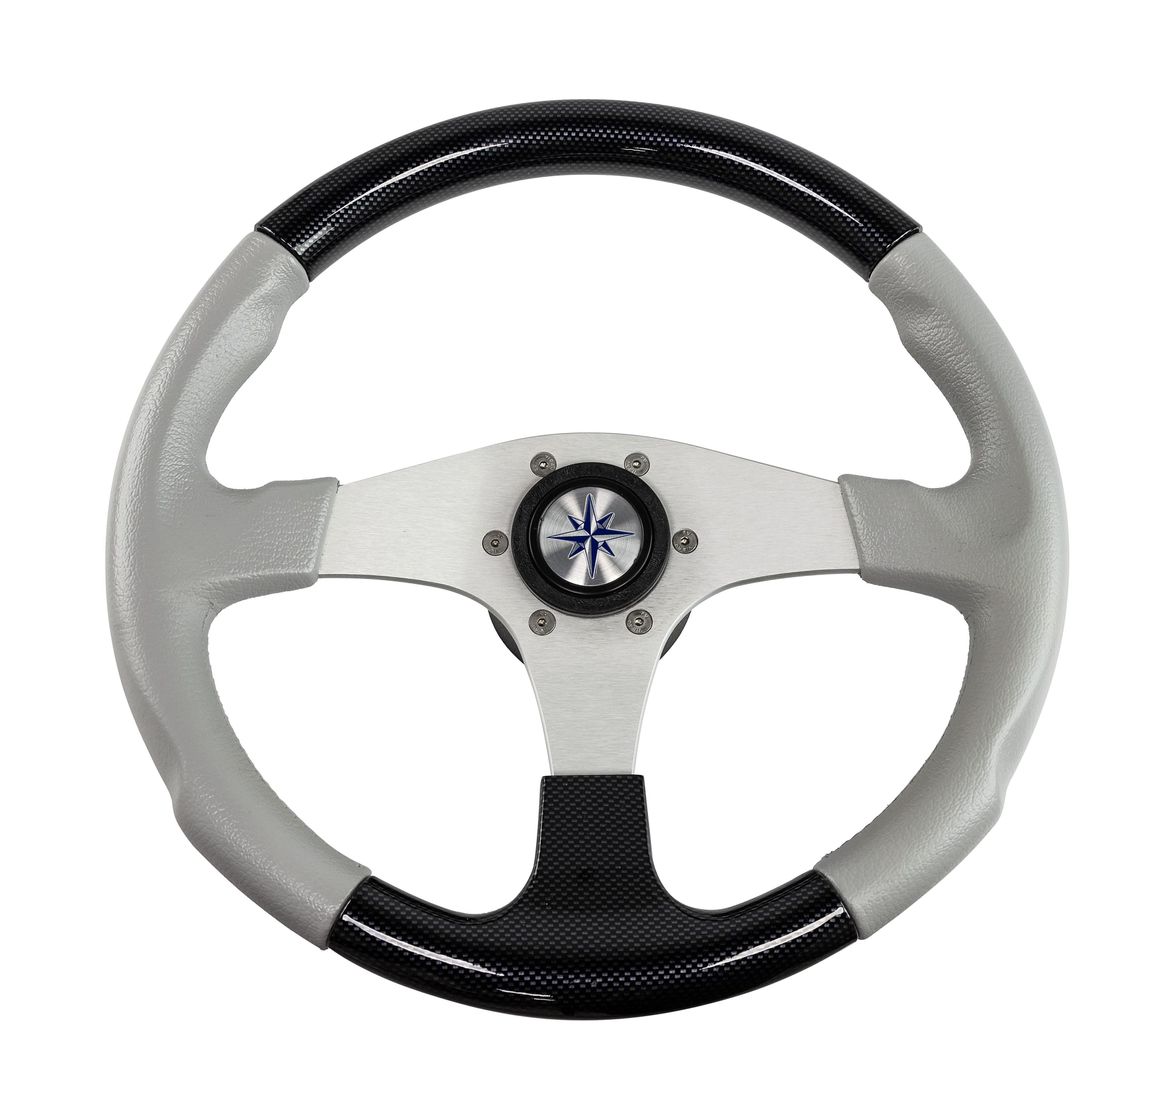 Рулевое колесо EVO MARINE 2 обод черный/серый, спицы серебряные д. 355 мм Volanti Luisi VN850003-35